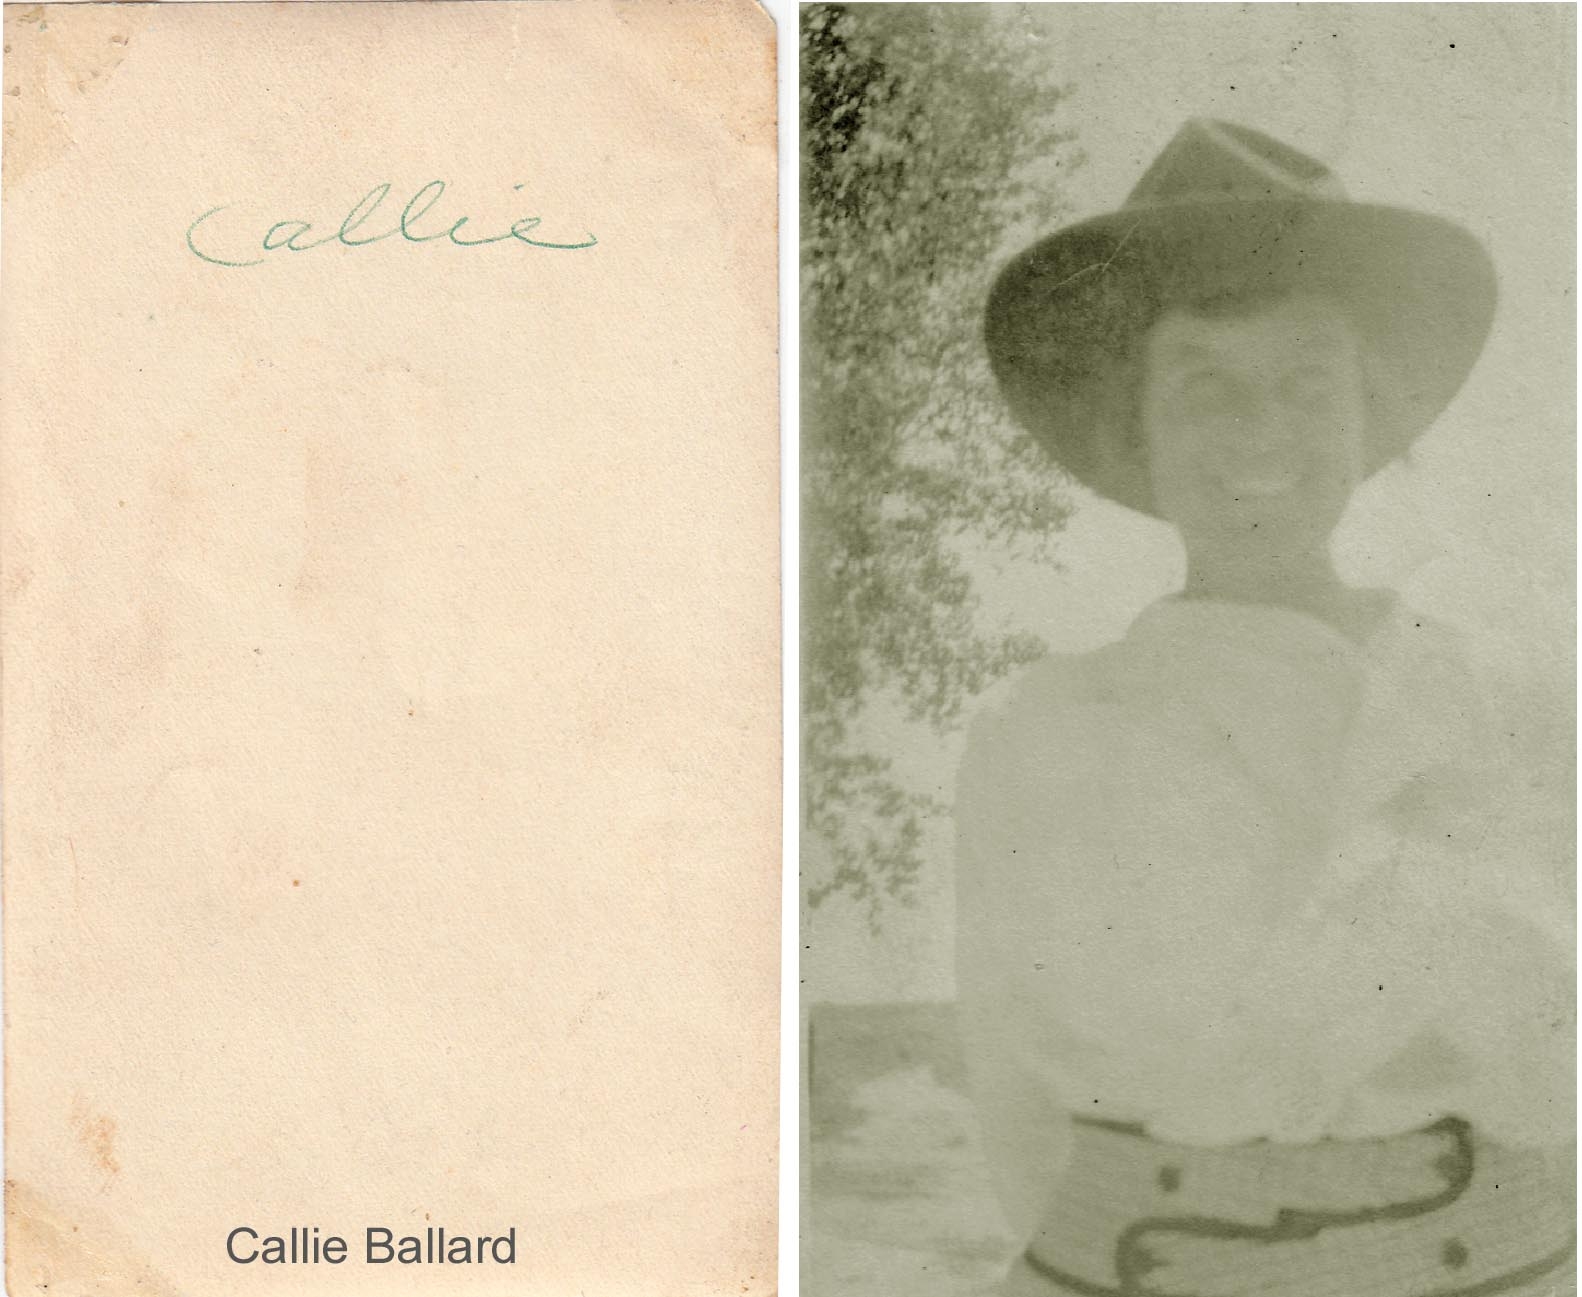 Caroline "Callie" Ballard